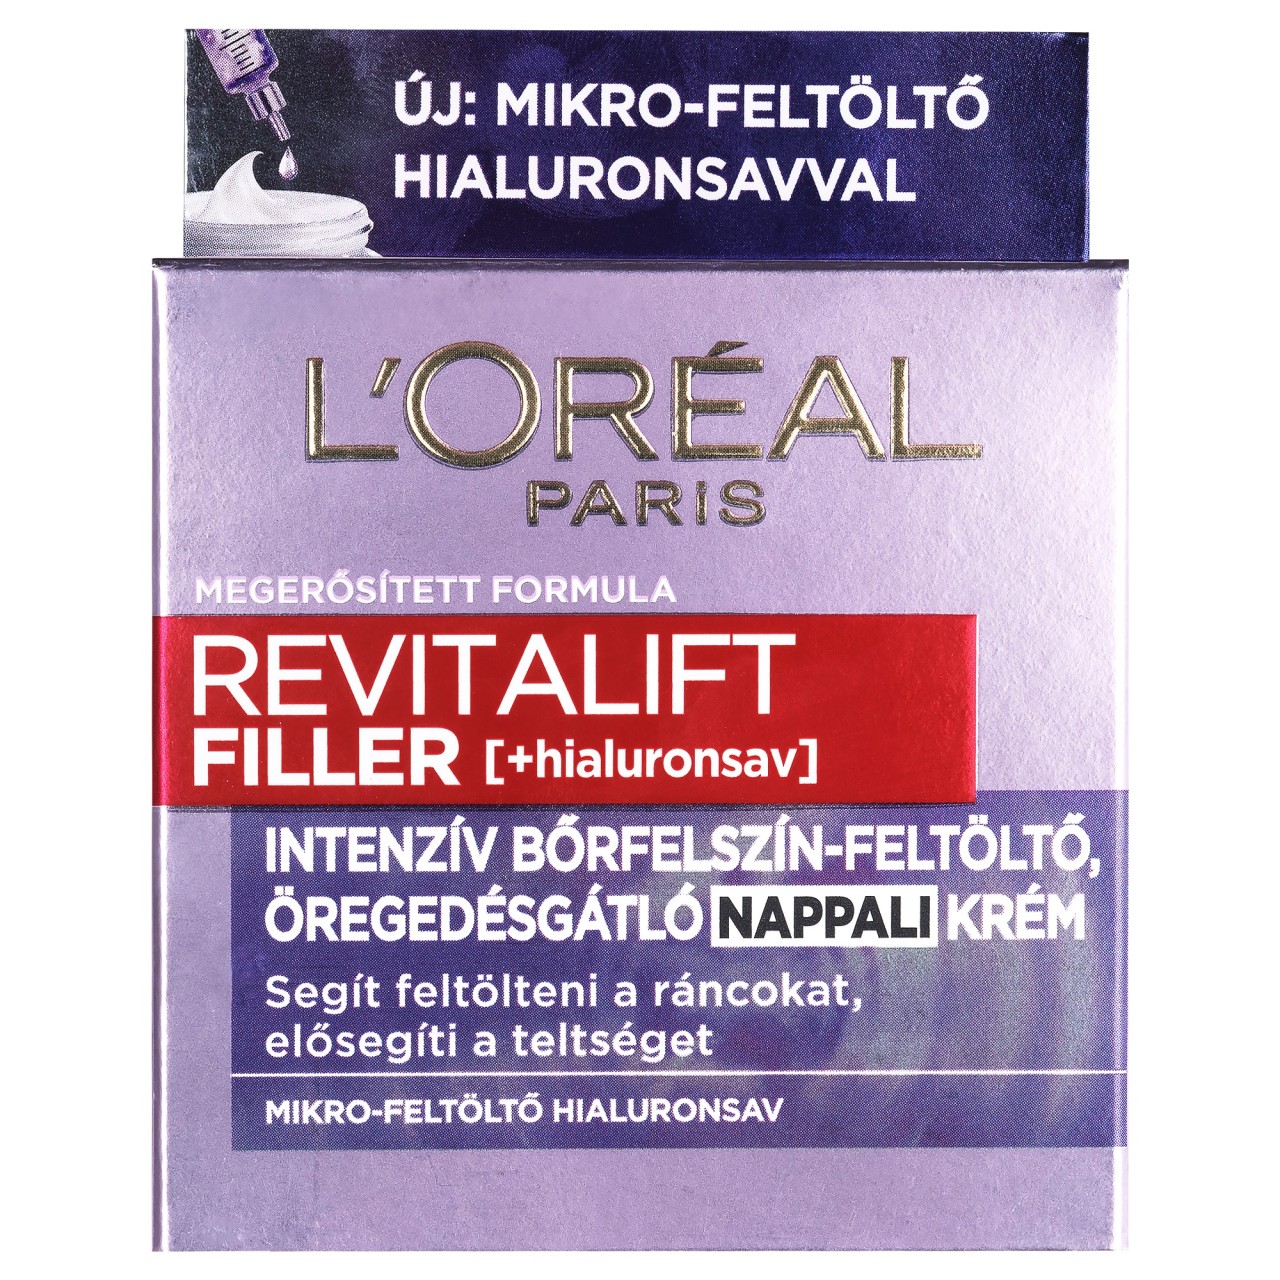 L'Oréal Paris Filler HA Bőrfeltöltő Arckrém